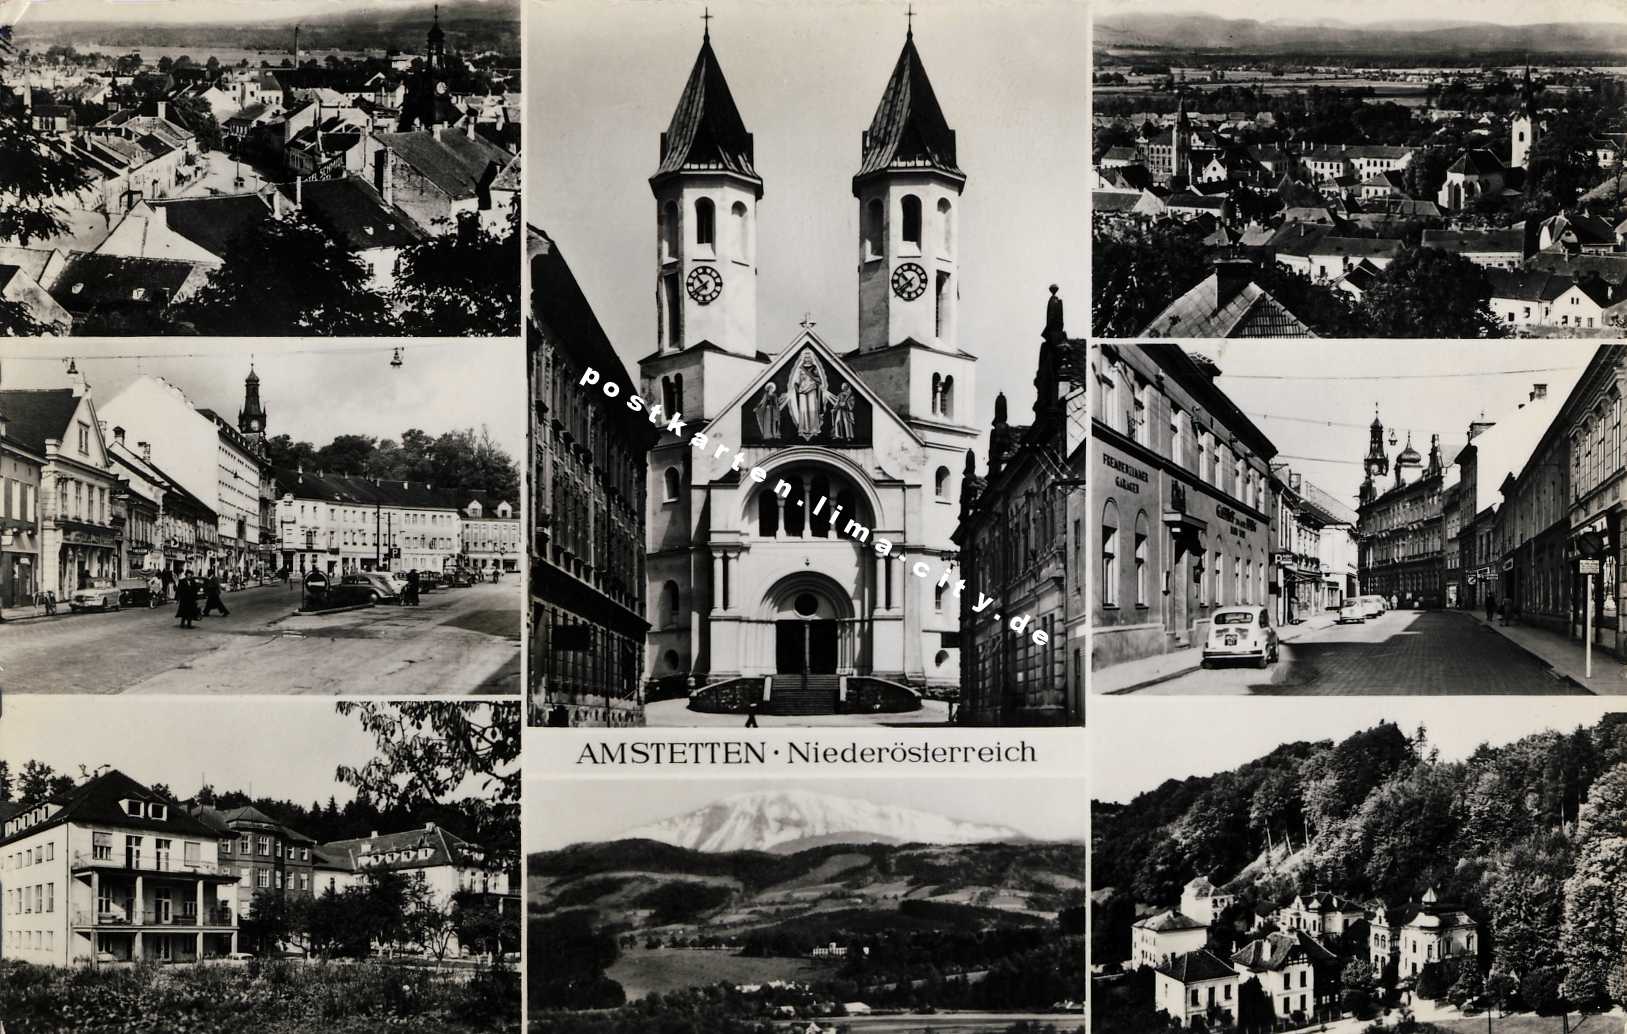 Amstetten 1960